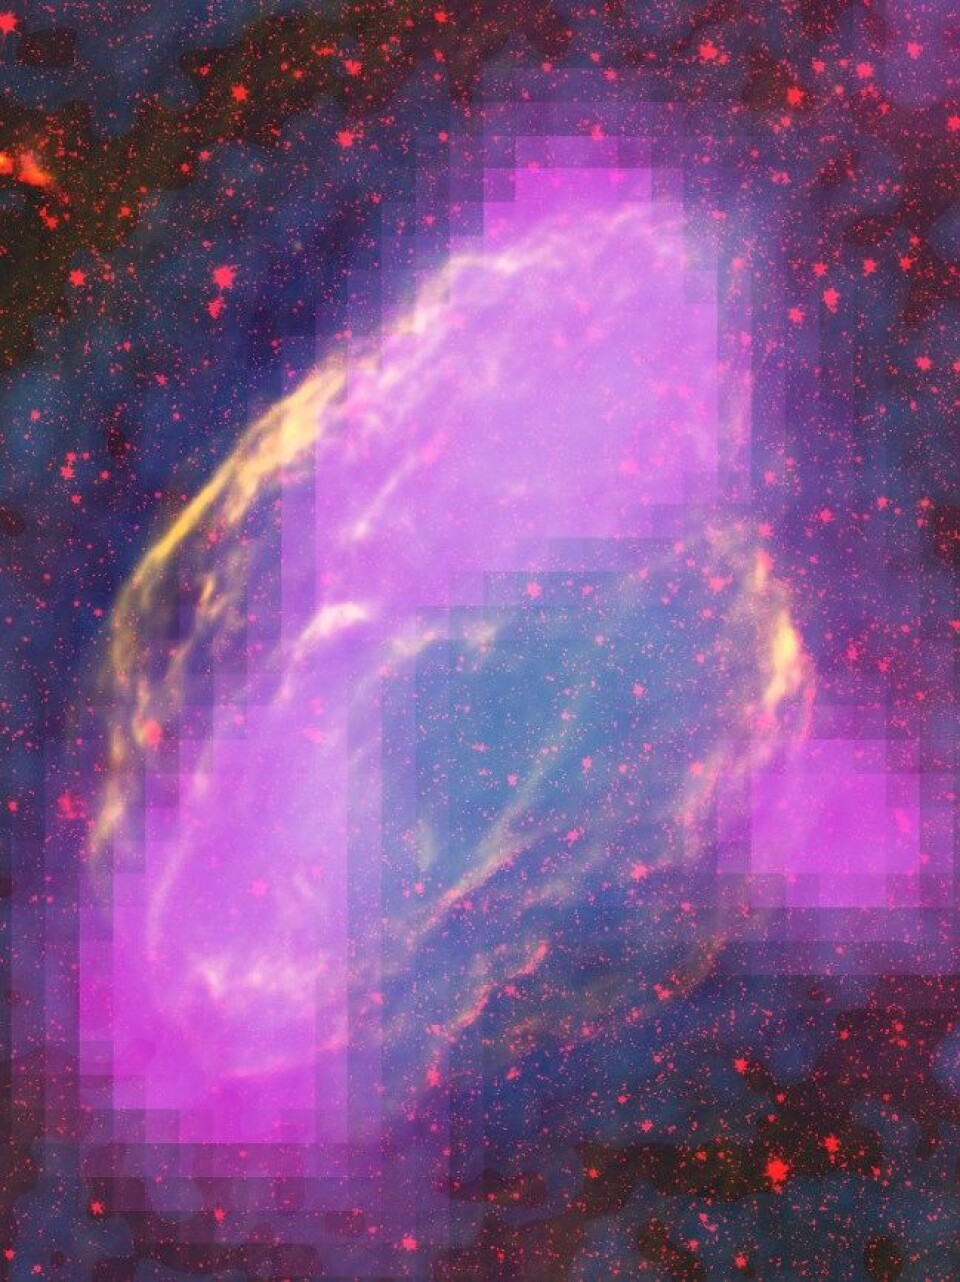 Bilder tatt av Fermi-teleskopet tidligere i år hjalp astronomer til å forstå mer om kosmisk stråling. Bildet viser supernovaen W44. (Foto: NASA/DOE/Fermi LAT Collaboration, ROSAT, JPL-Caltech, og NRAO/AUI)